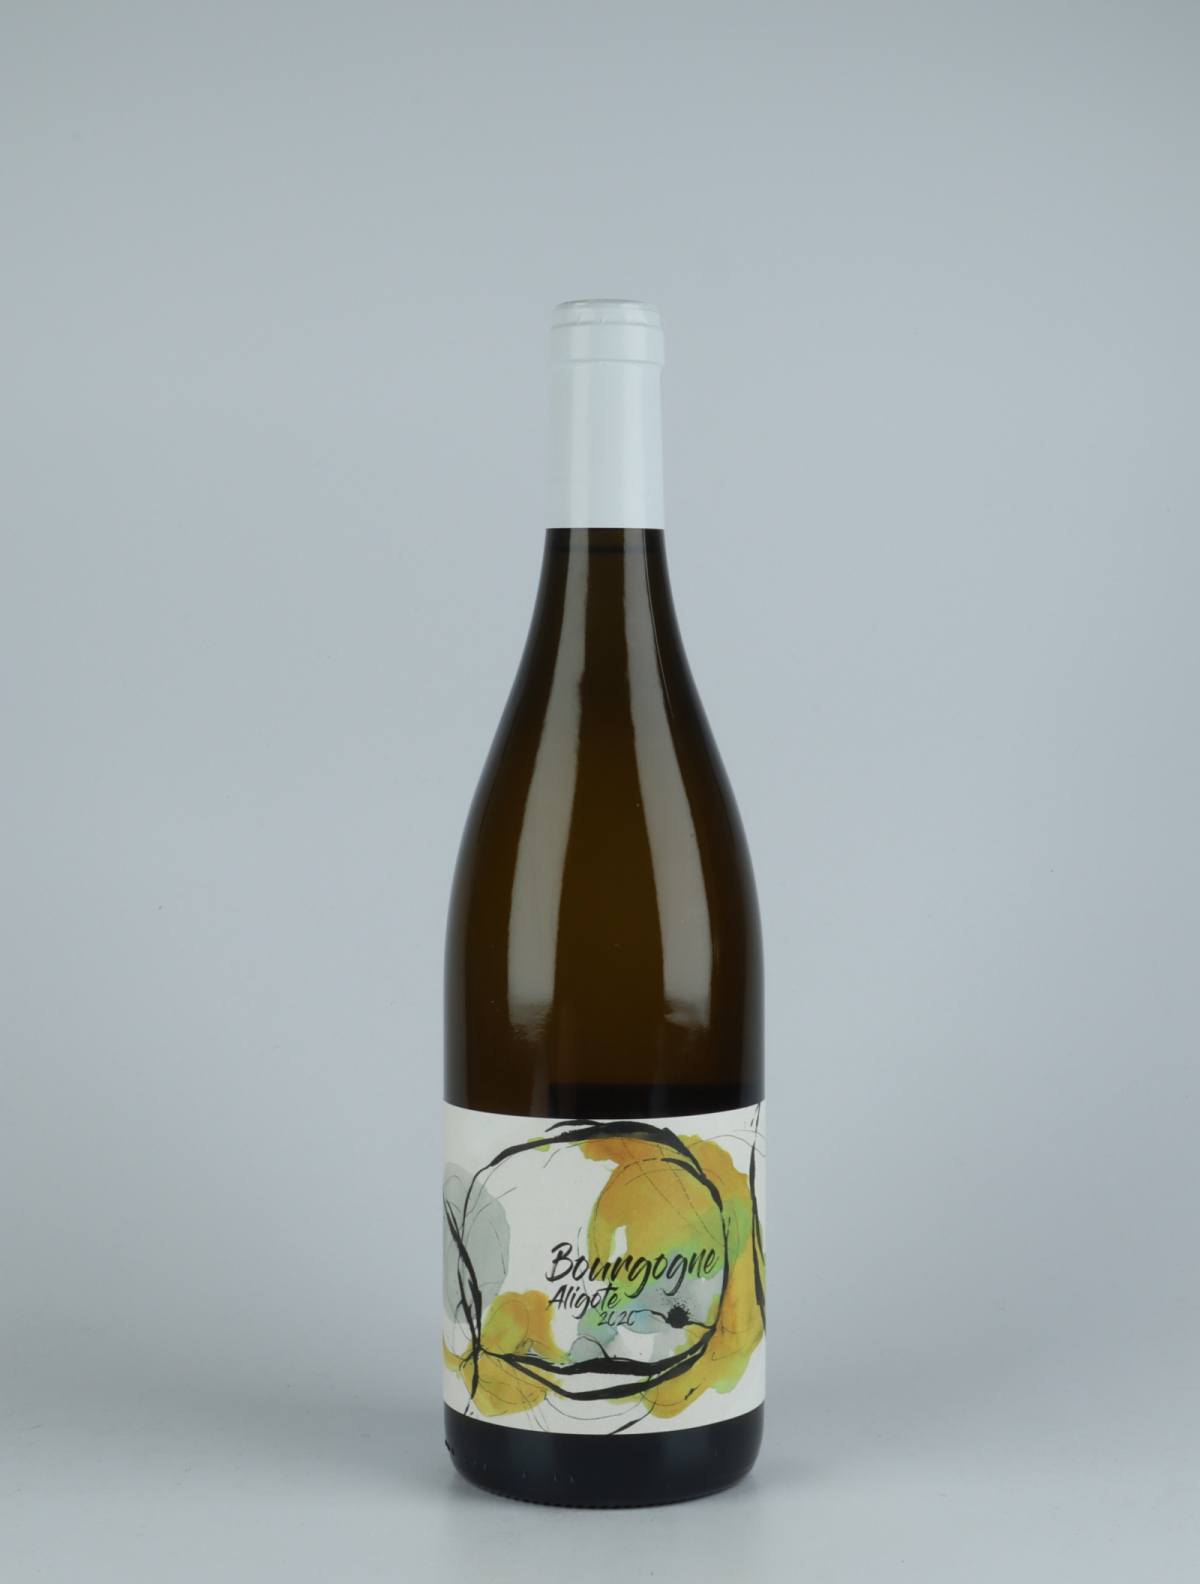 A bottle 2020 Bourgogne Aligoté White wine from Domaine Didon, Burgundy in France